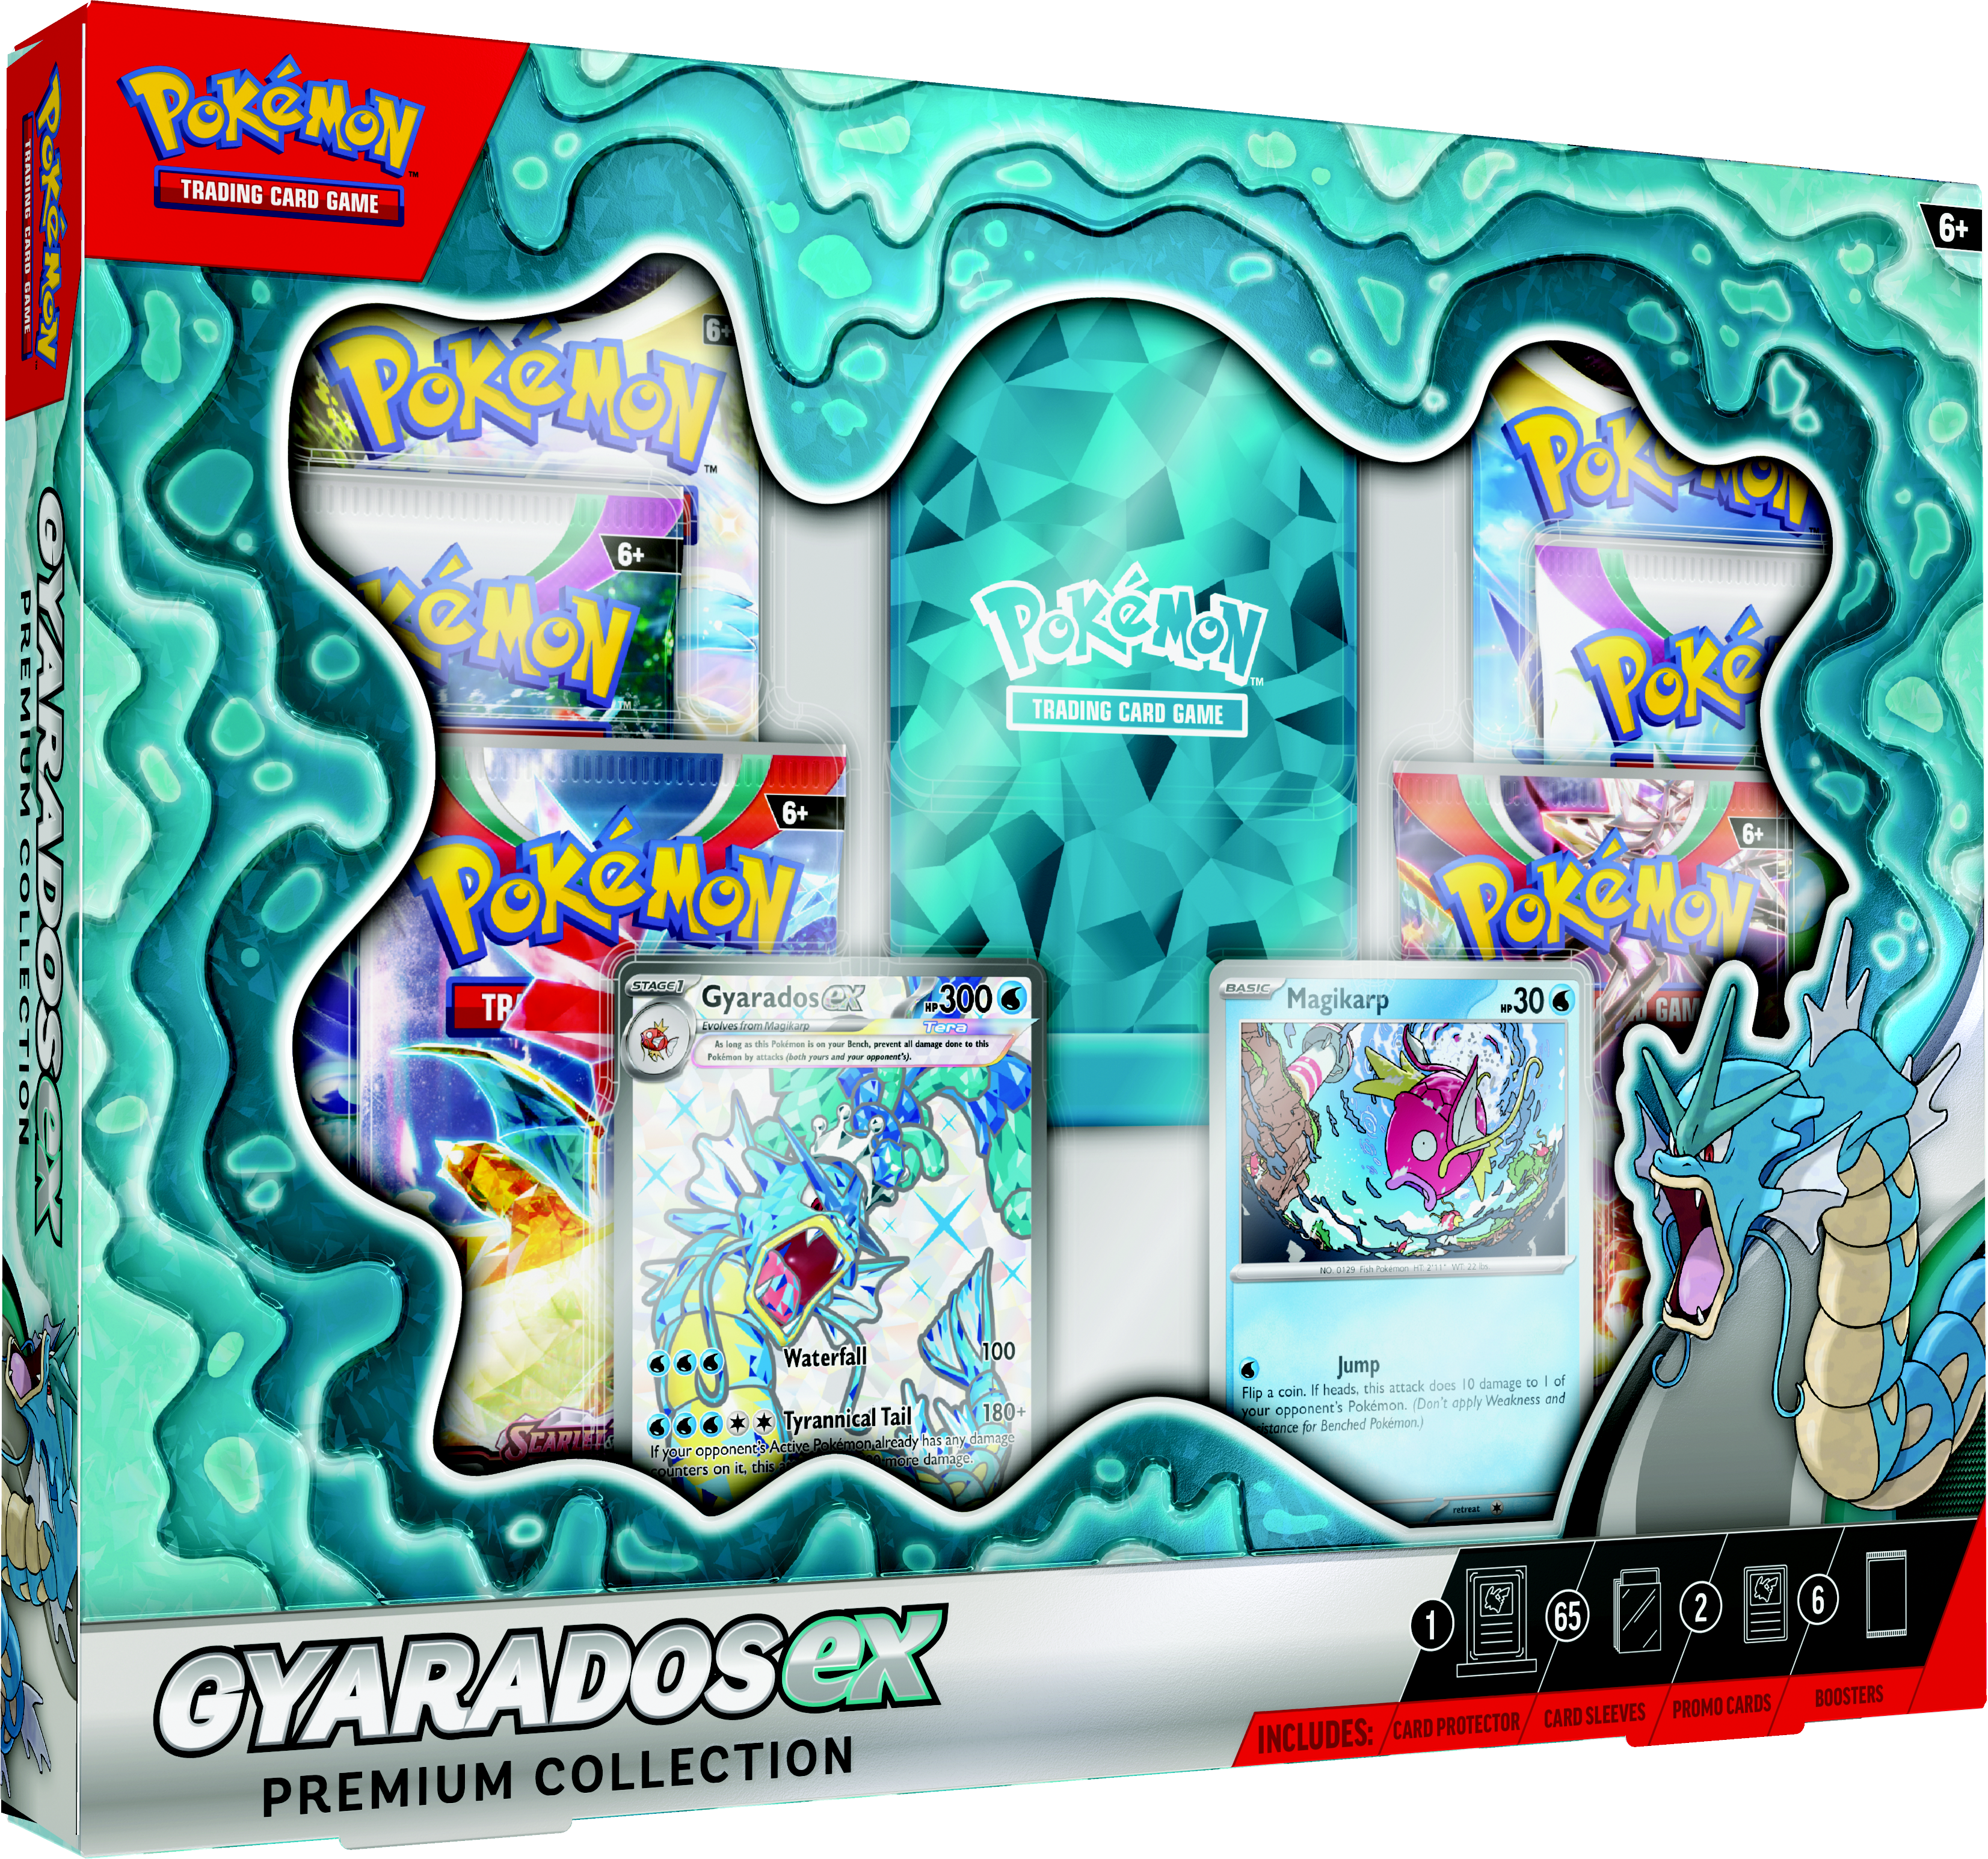 Pokemon Trading Card Game: Gyarados ex Premium Collection - GameStop  Exclusive